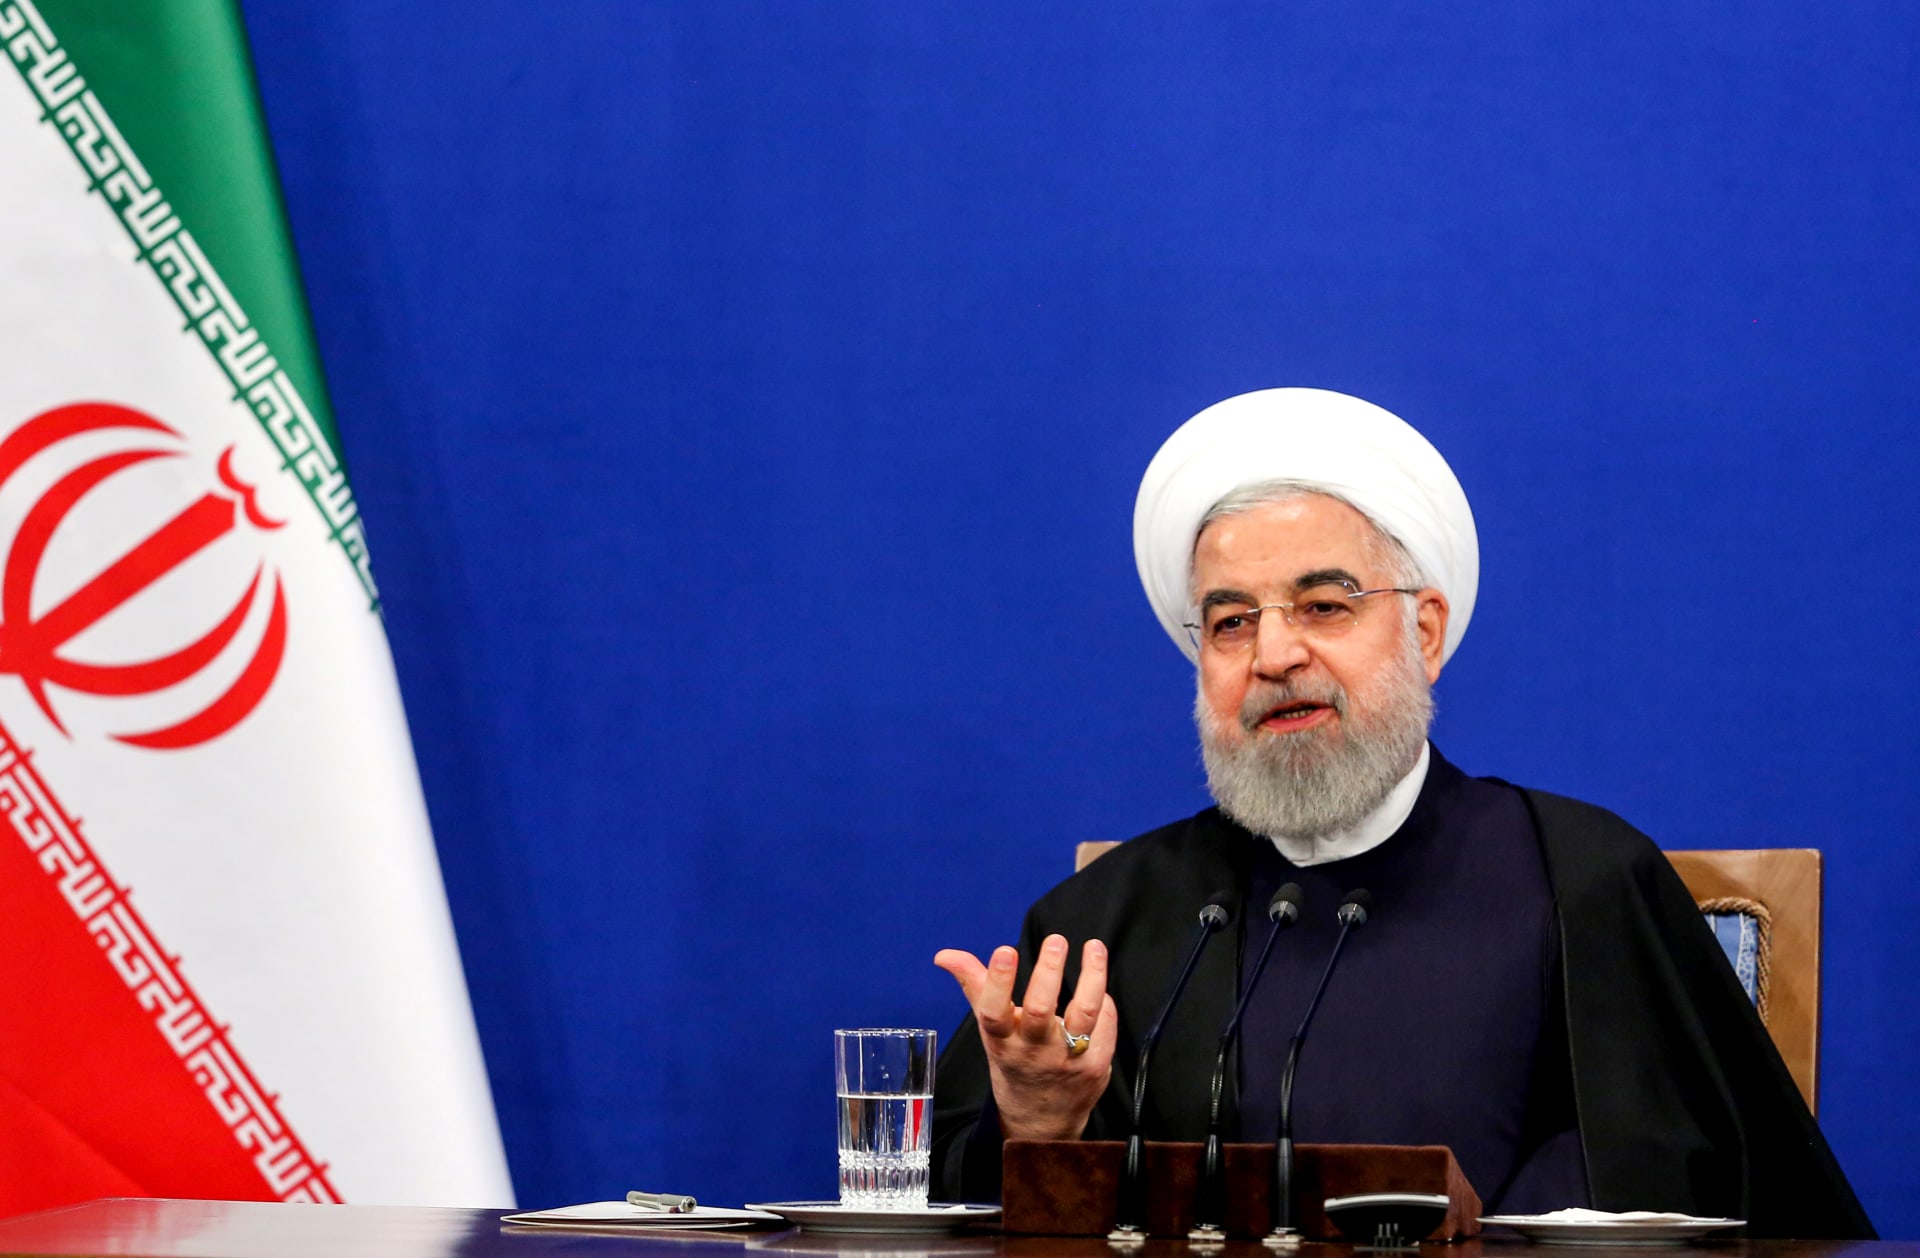 روحاني: العقوبات الأمريكية الجديدة "حيلة دعائية" لن تكسر مقاومتنا